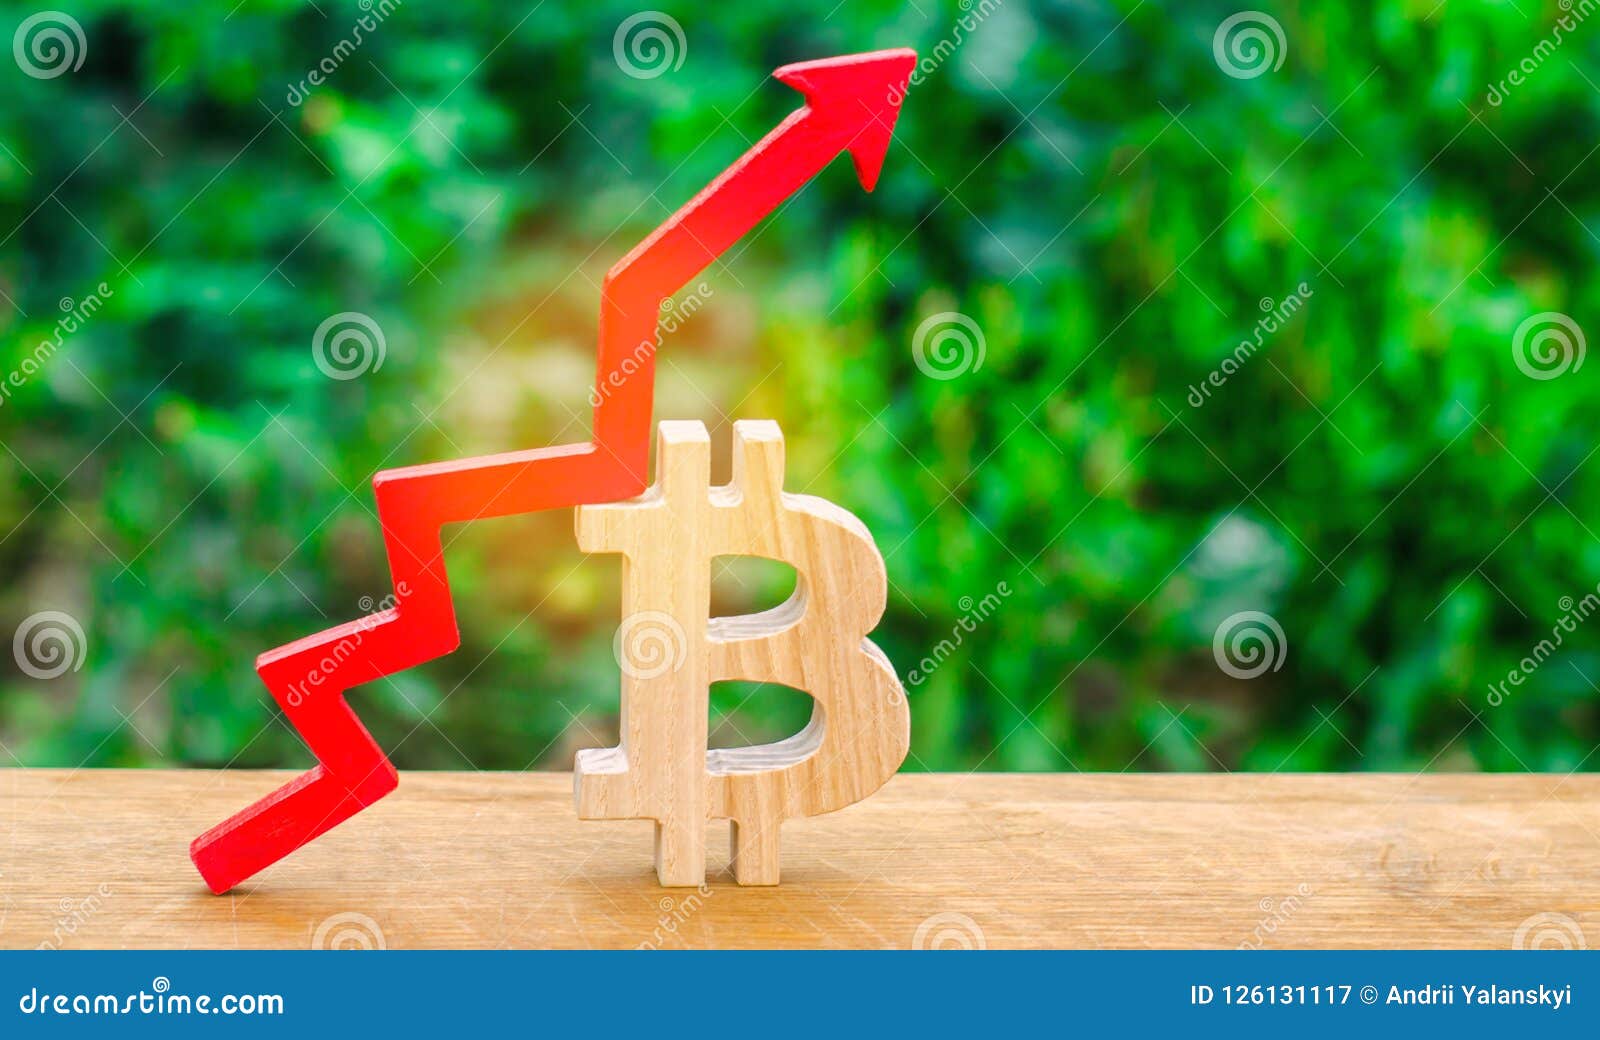 bitcoin blockchain increase